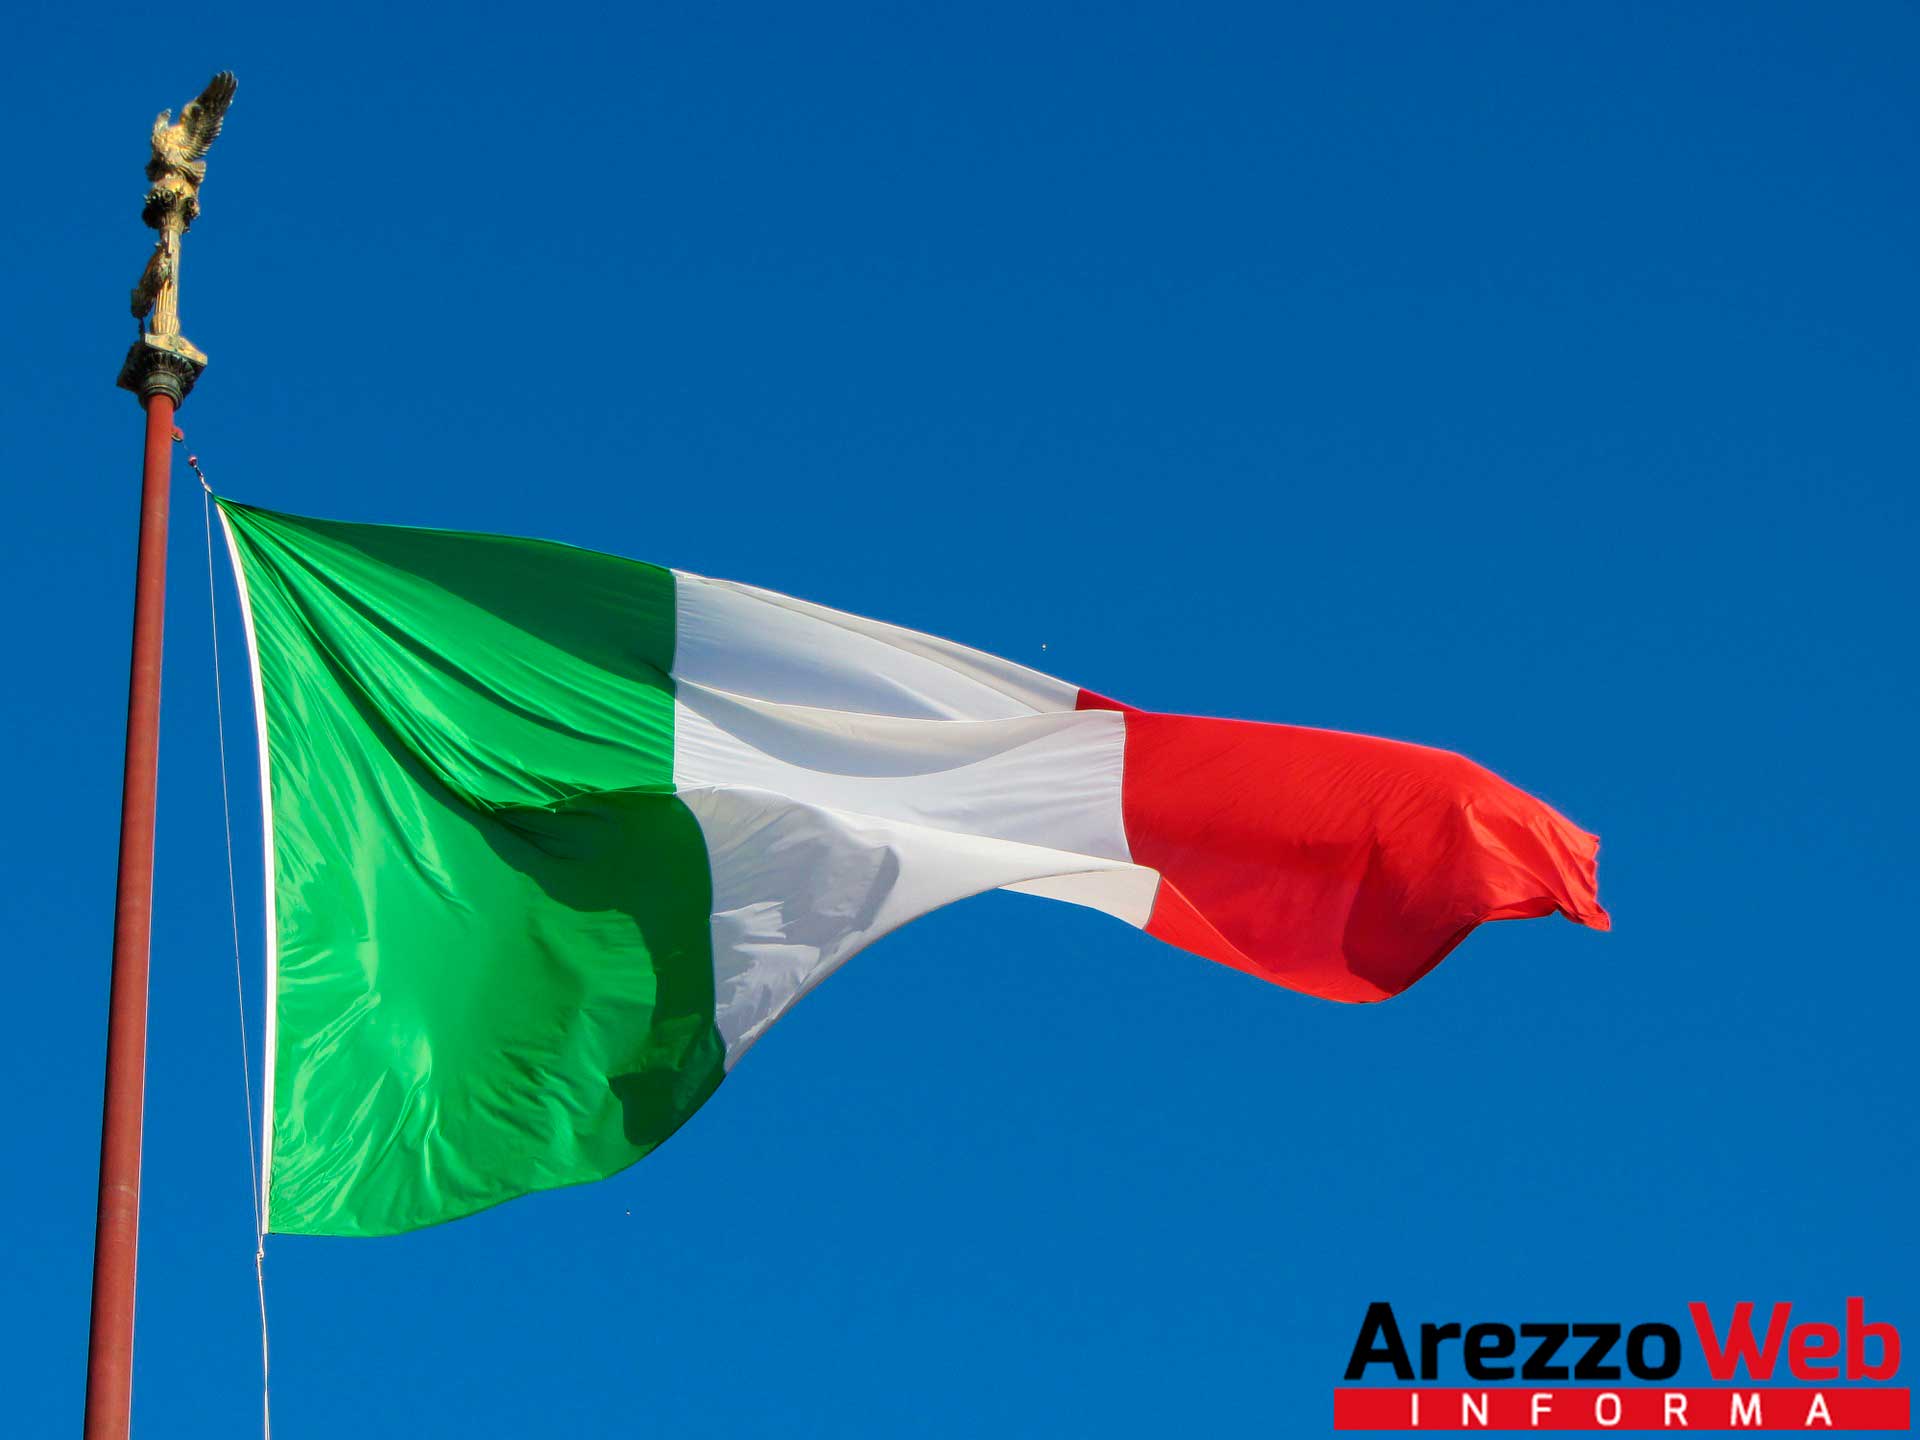 78° Anniversario della Liberazione Nazionale, il programma delle celebrazioni ad Arezzo